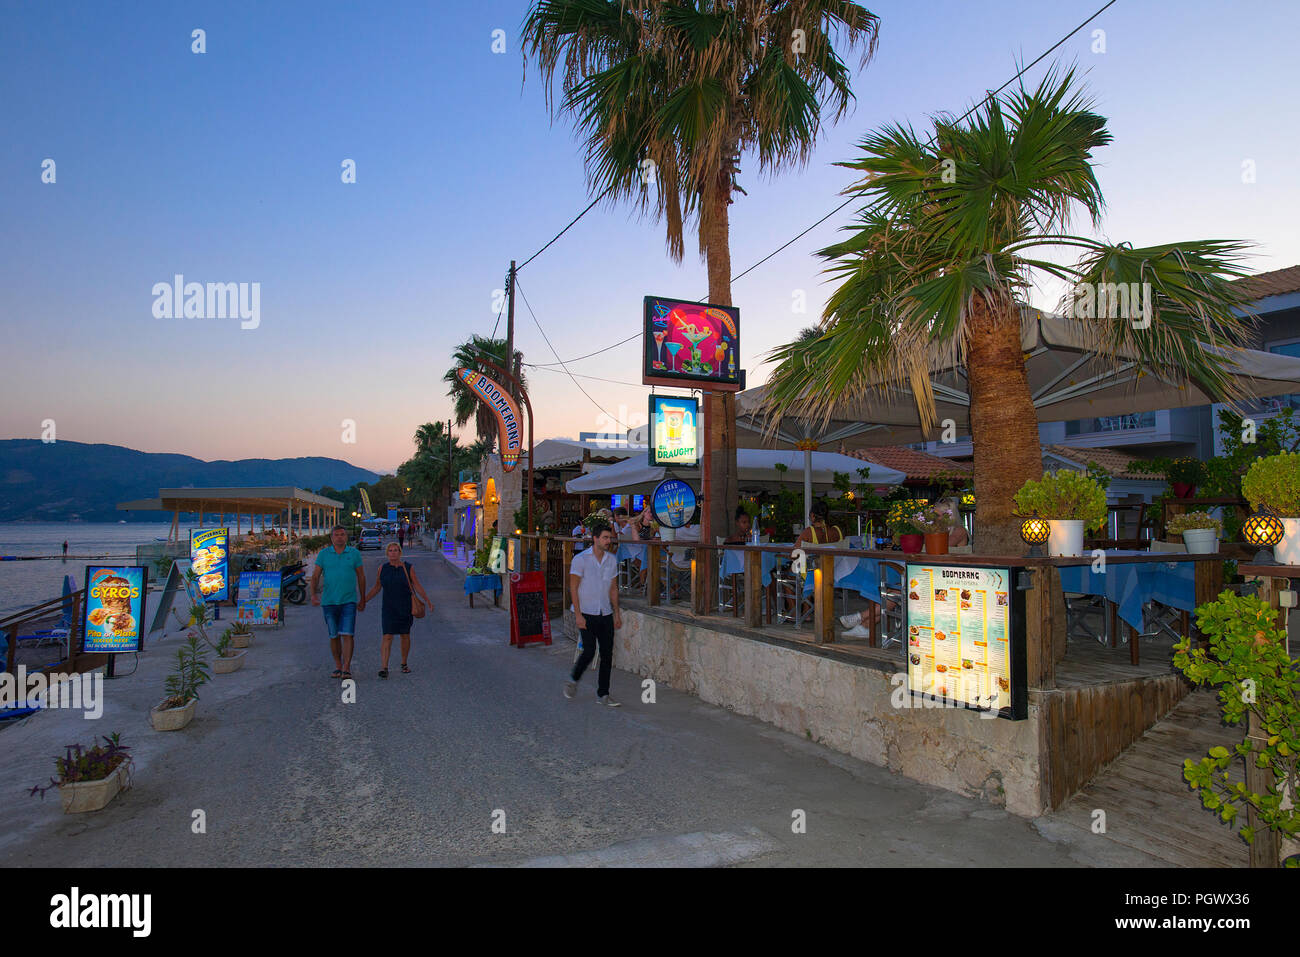 Sea front Taverna, Agios Sostis, Zakynthos, Greece Stock Photo